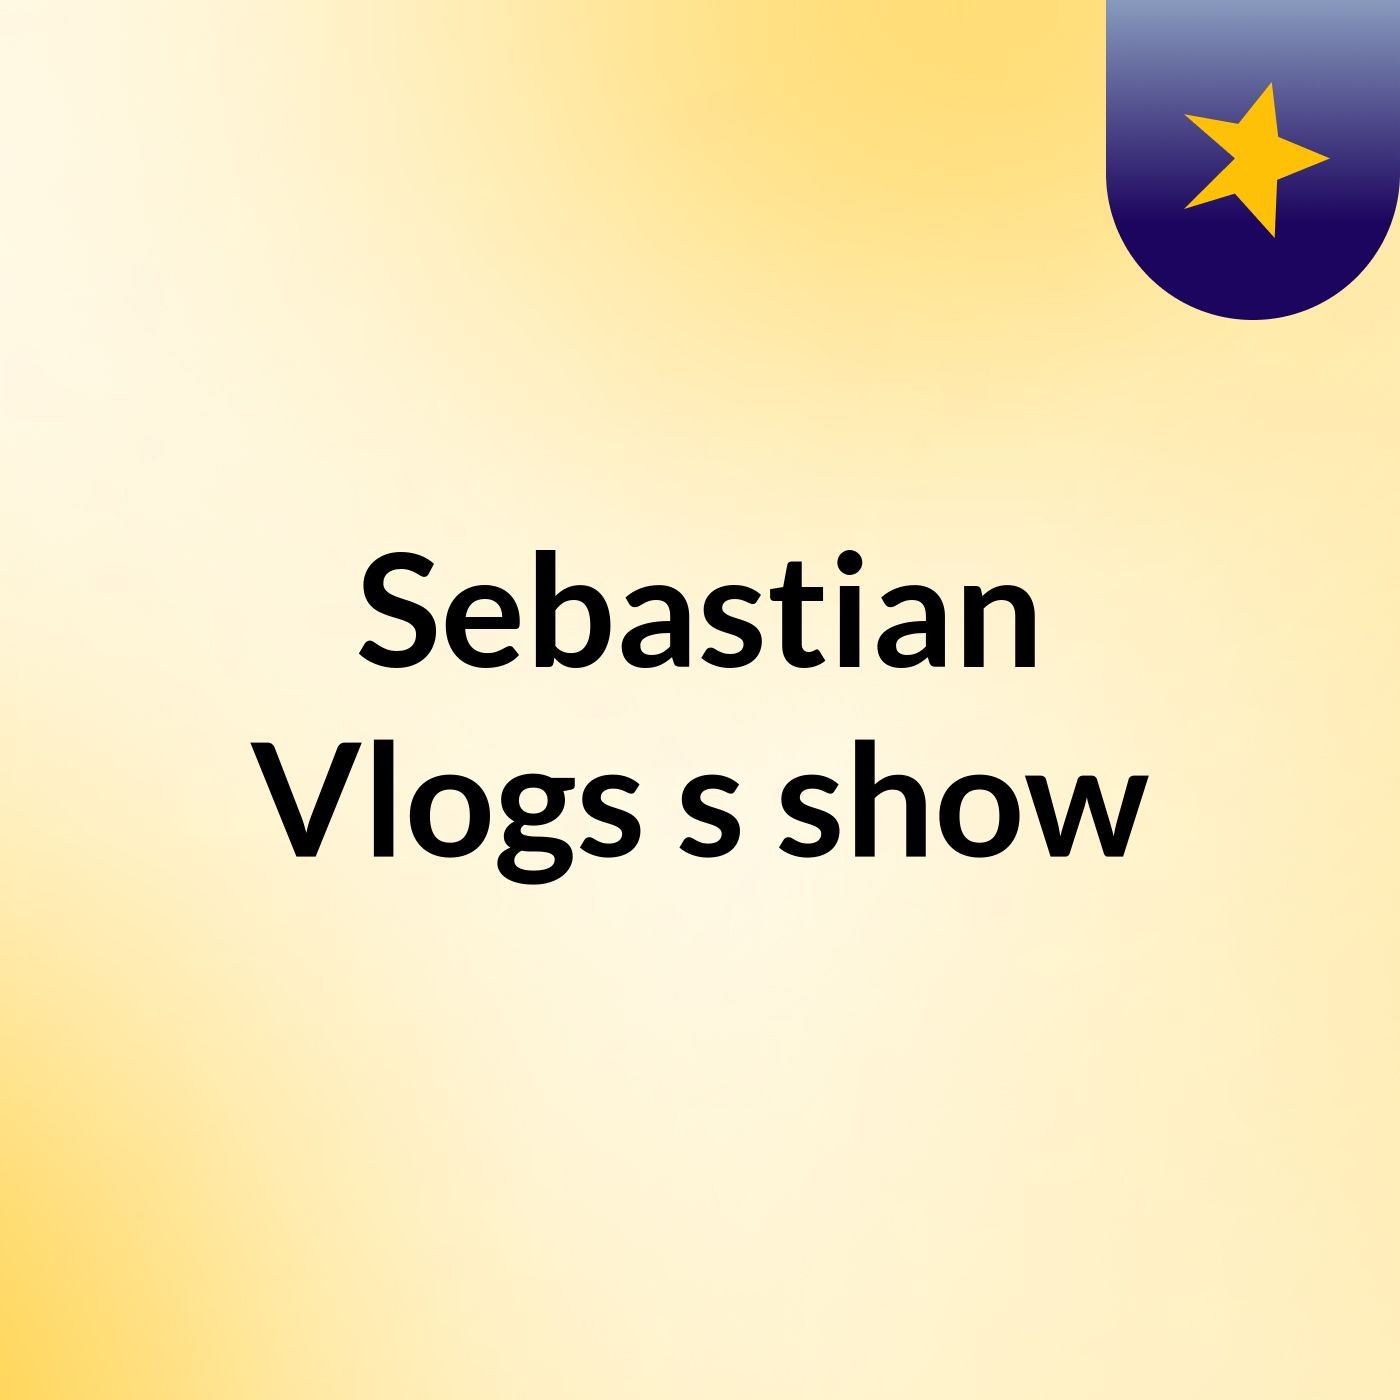 Sebastian Vlogs's show